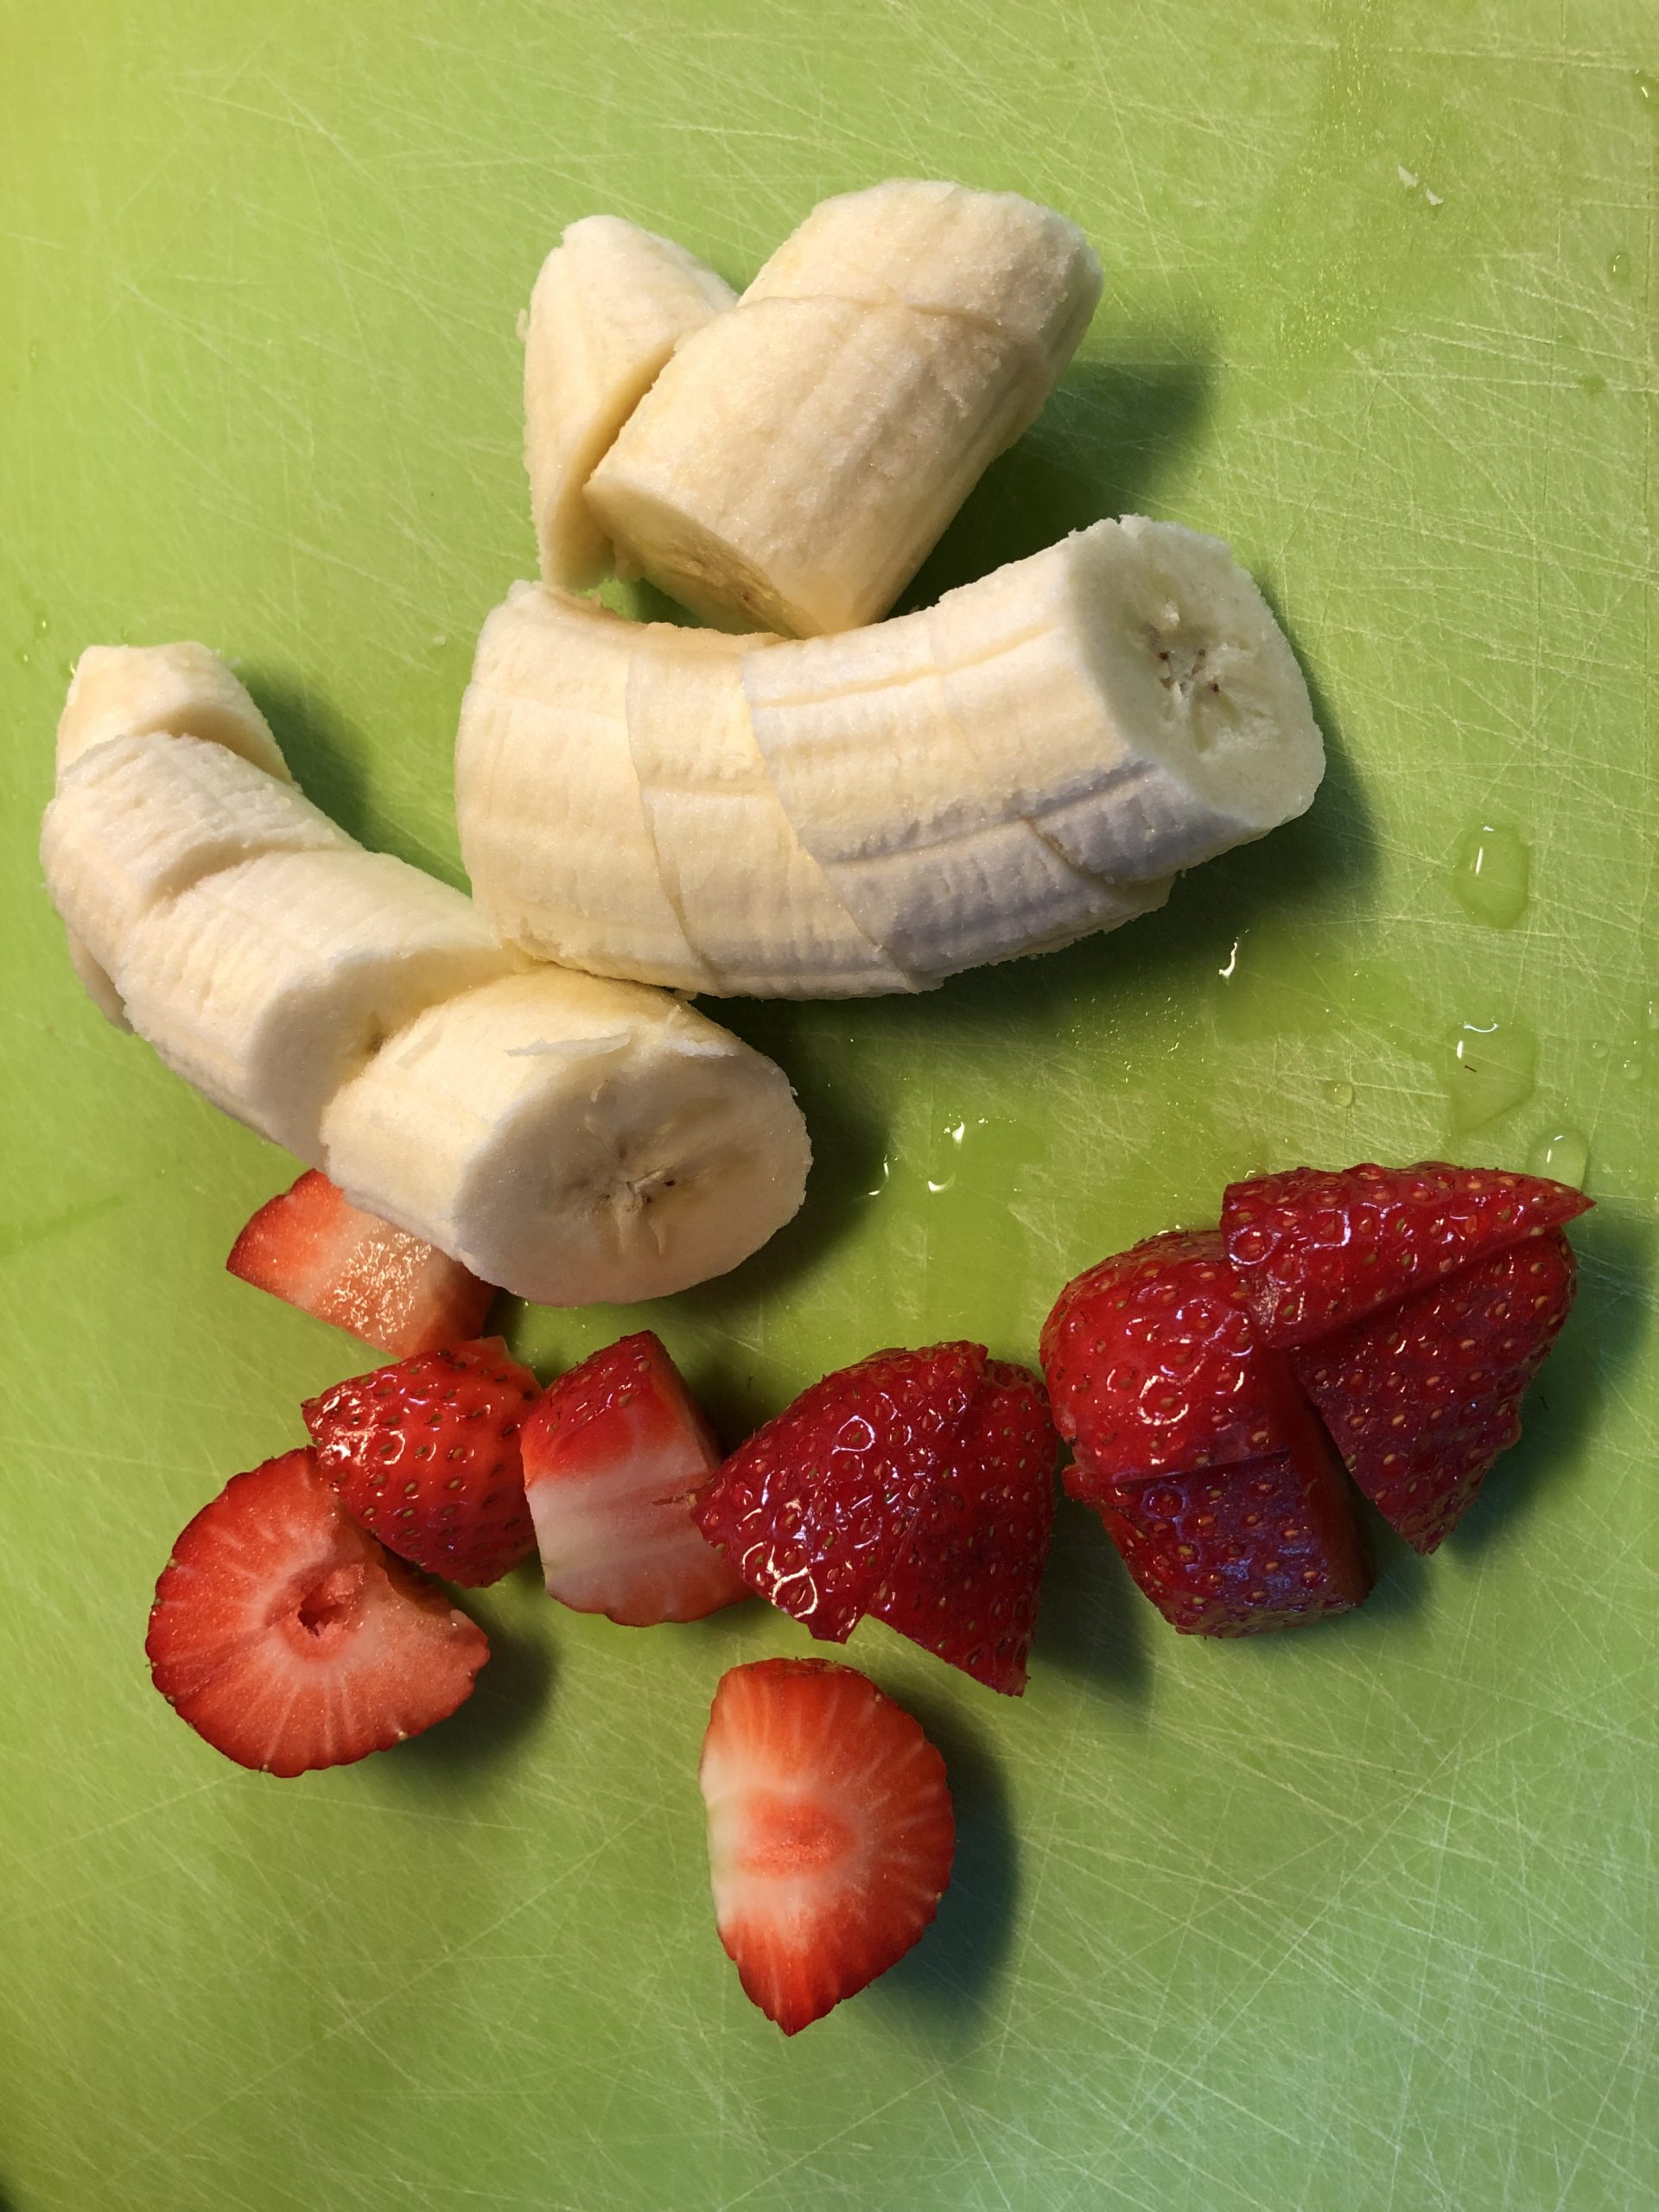 Bild zum Schritt 2 für das Bastel- und DIY-Abenteuer für Kinder: 'Erdbeeren und Banane grob in Stücke schneiden.'